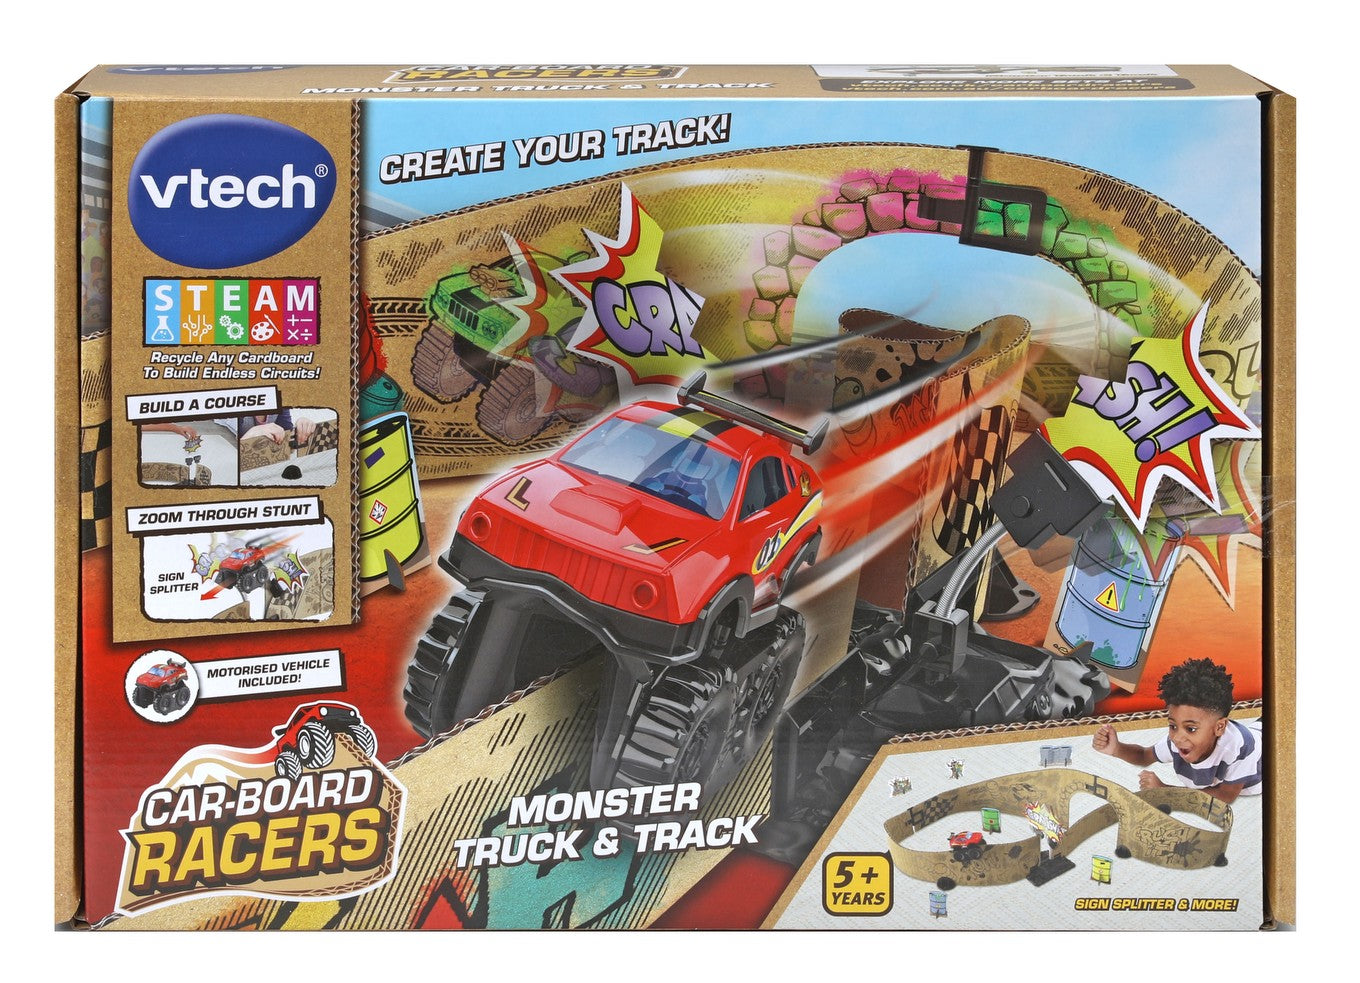 VTech Car-Board Racers Monster Truck & Track